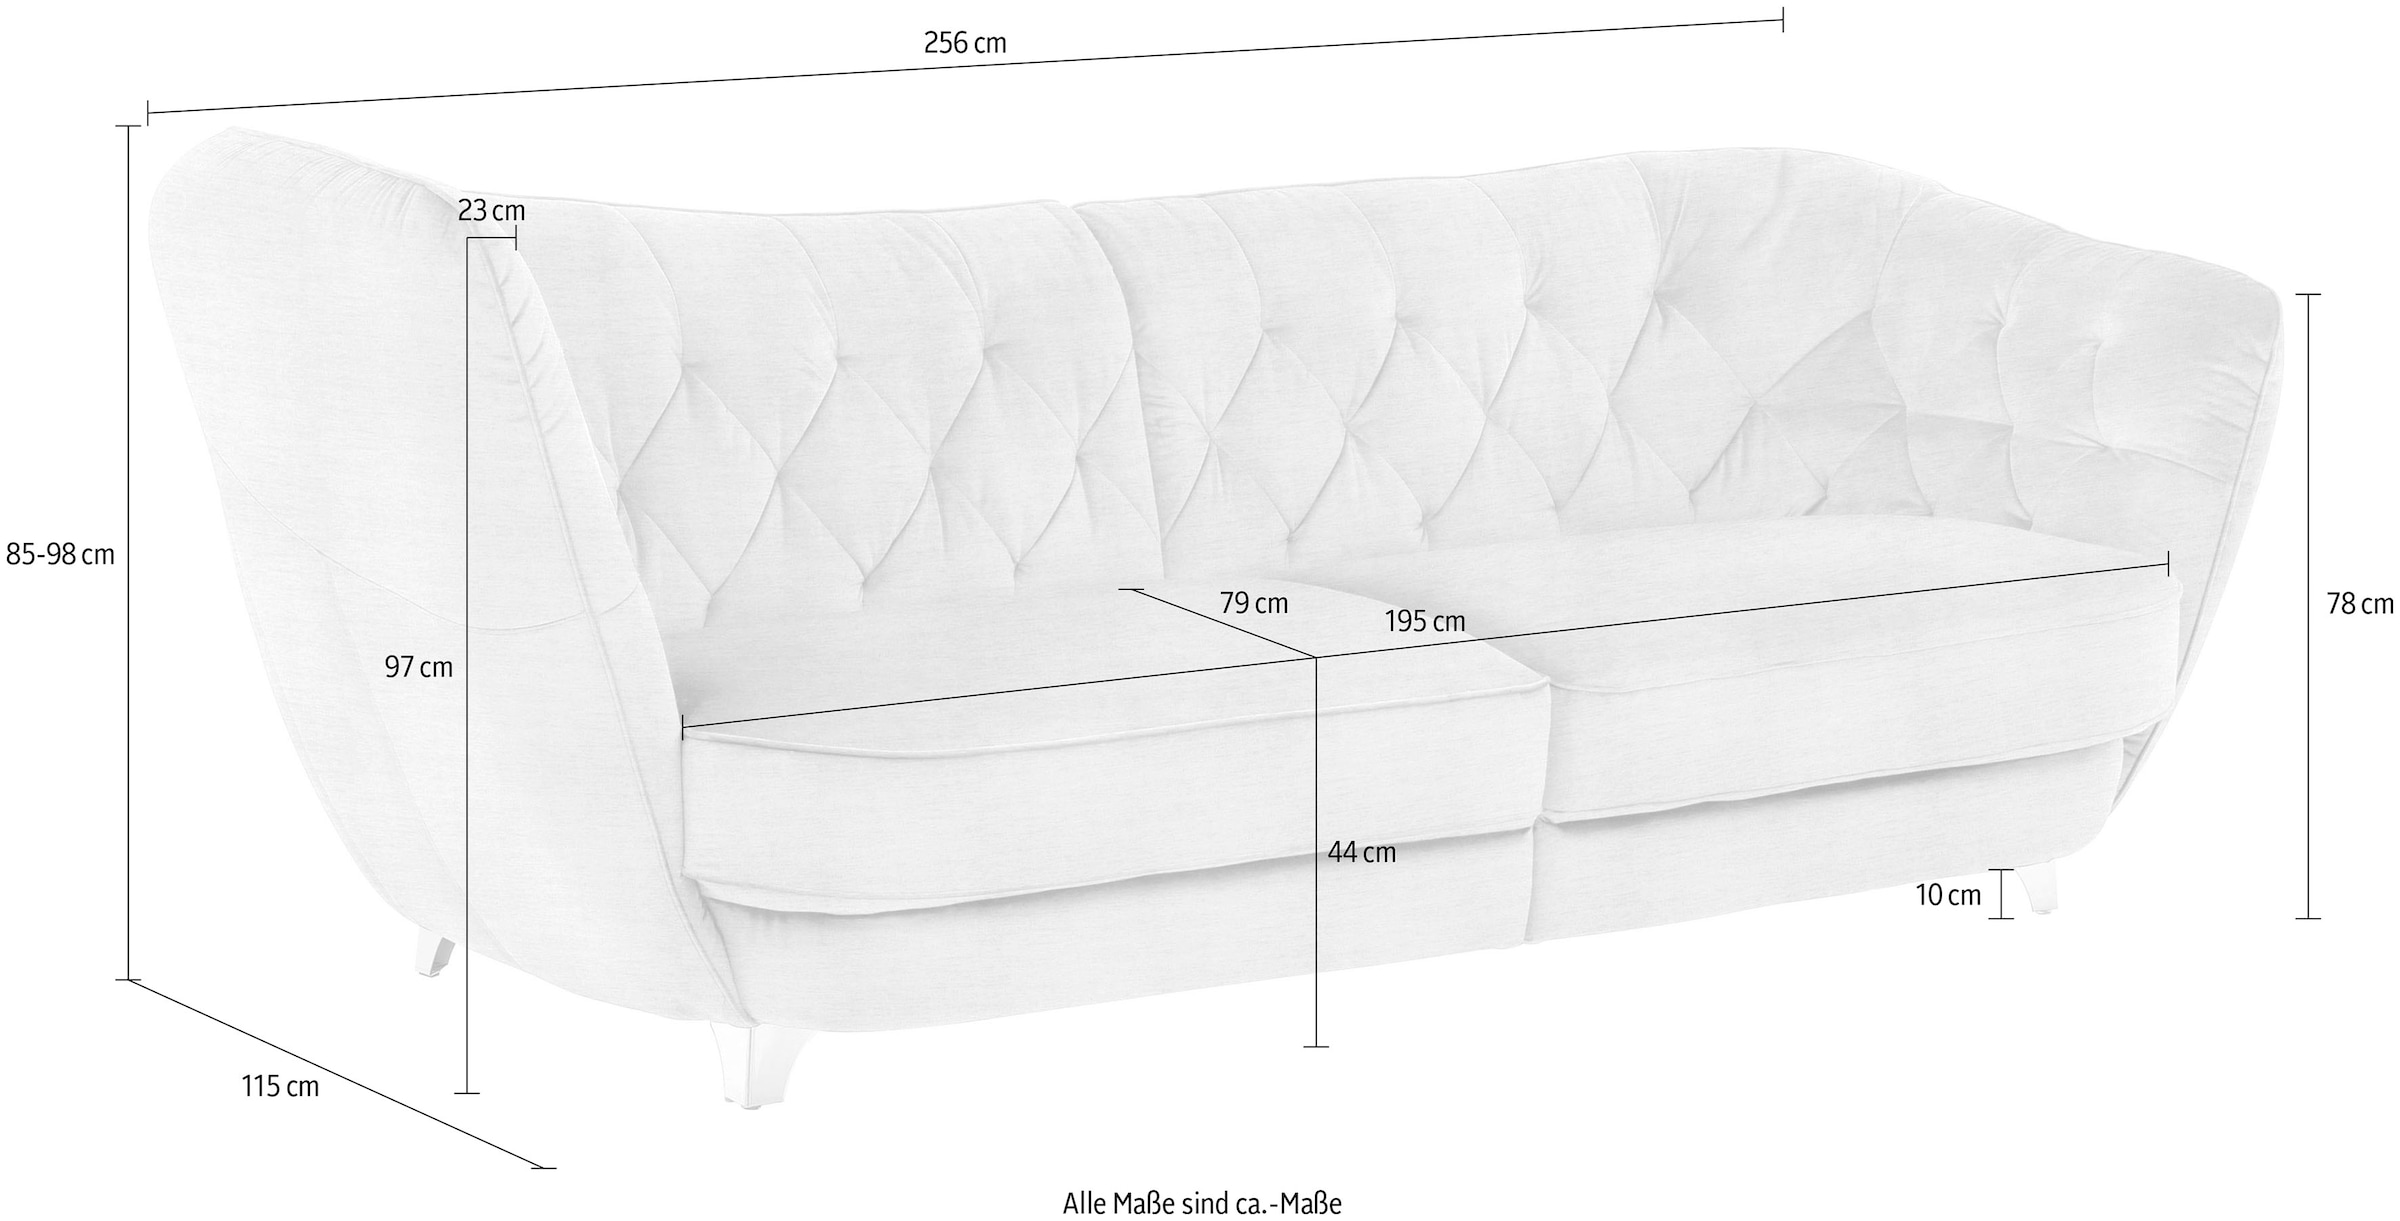 Leonique Big-Sofa »Retro«